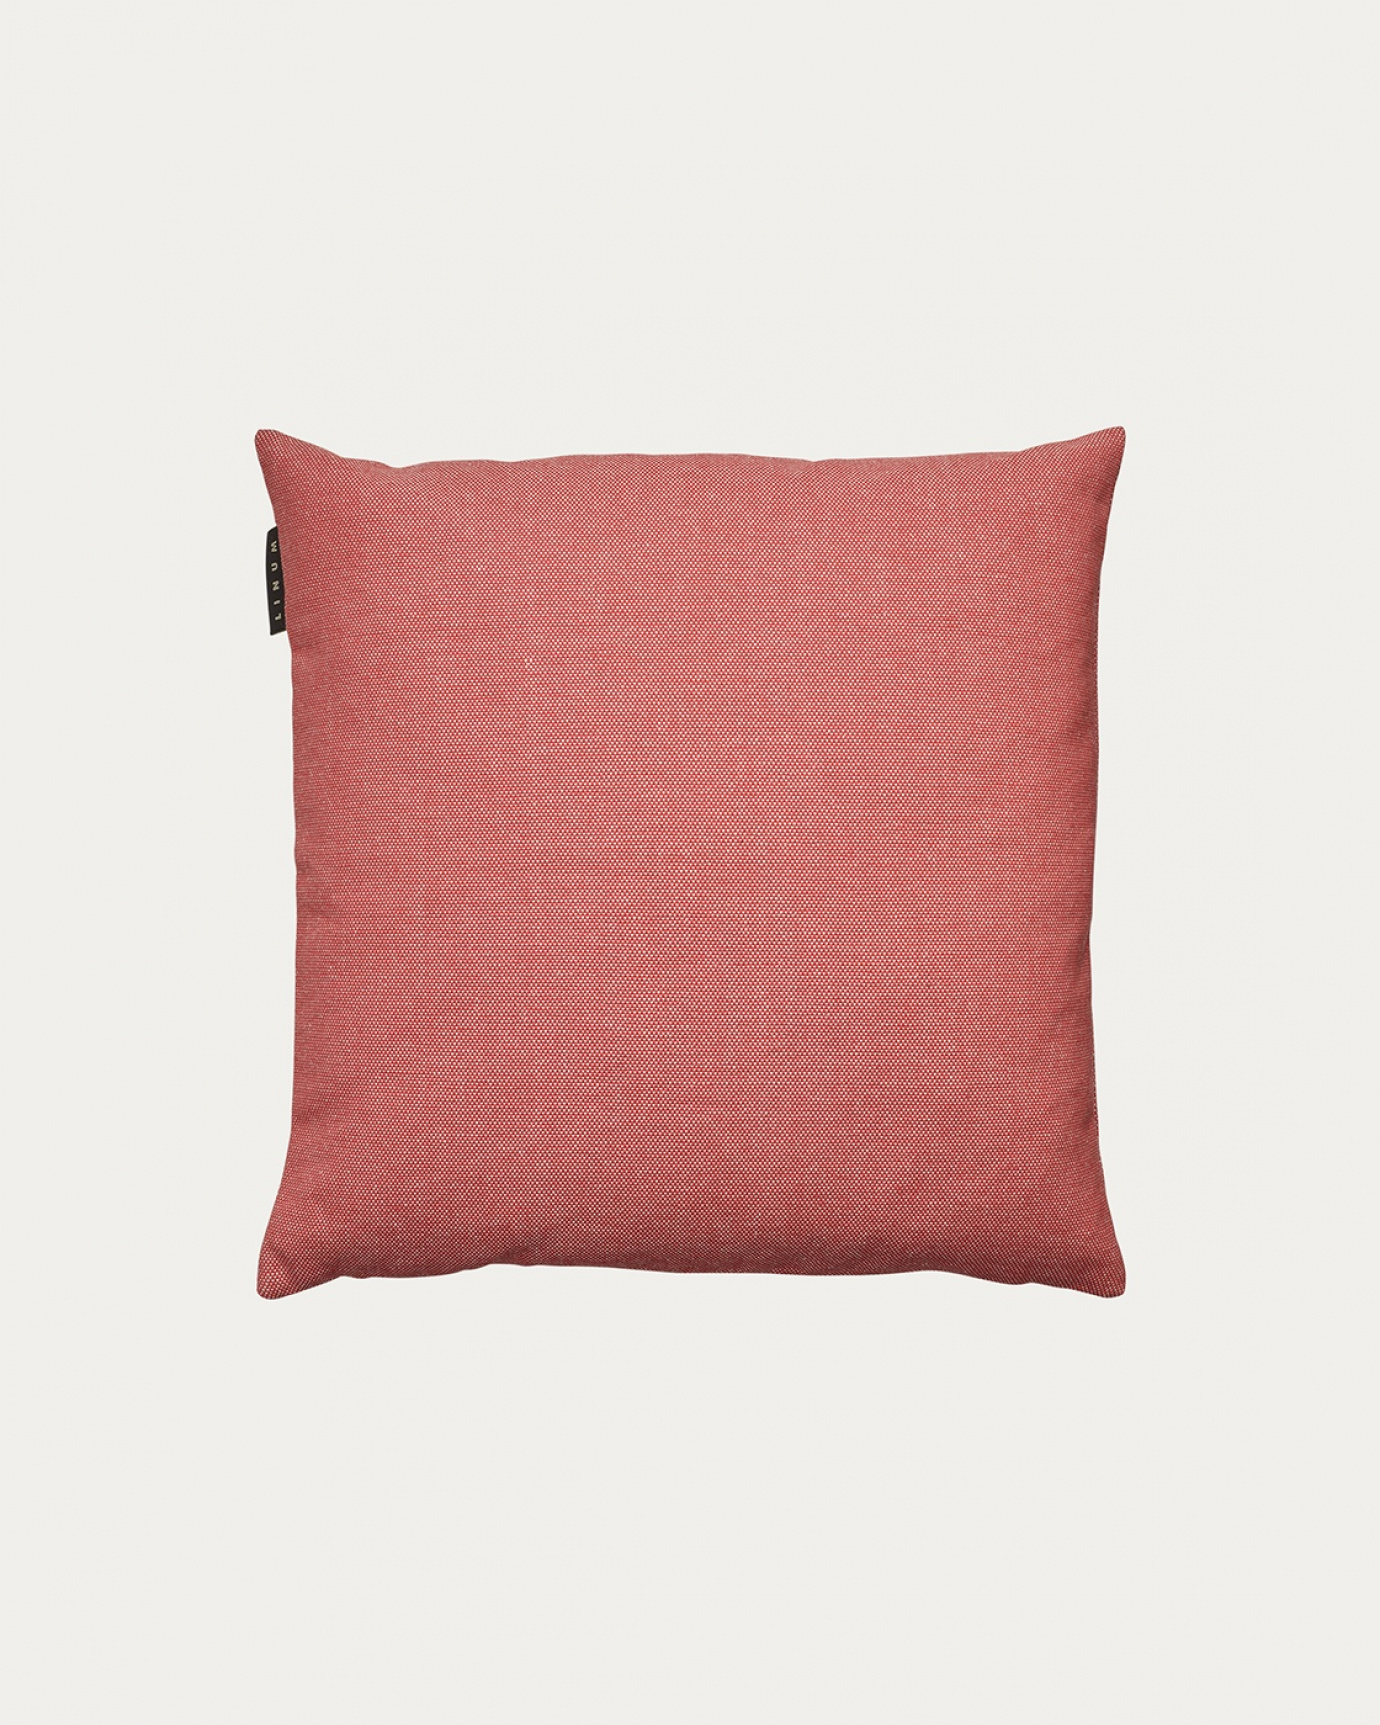 Image du produit housse de coussin PEPPER coral rouge en coton doux de LINUM DESIGN. Facile à laver et durable pendant des générations. Taille 40 x 40 cm.